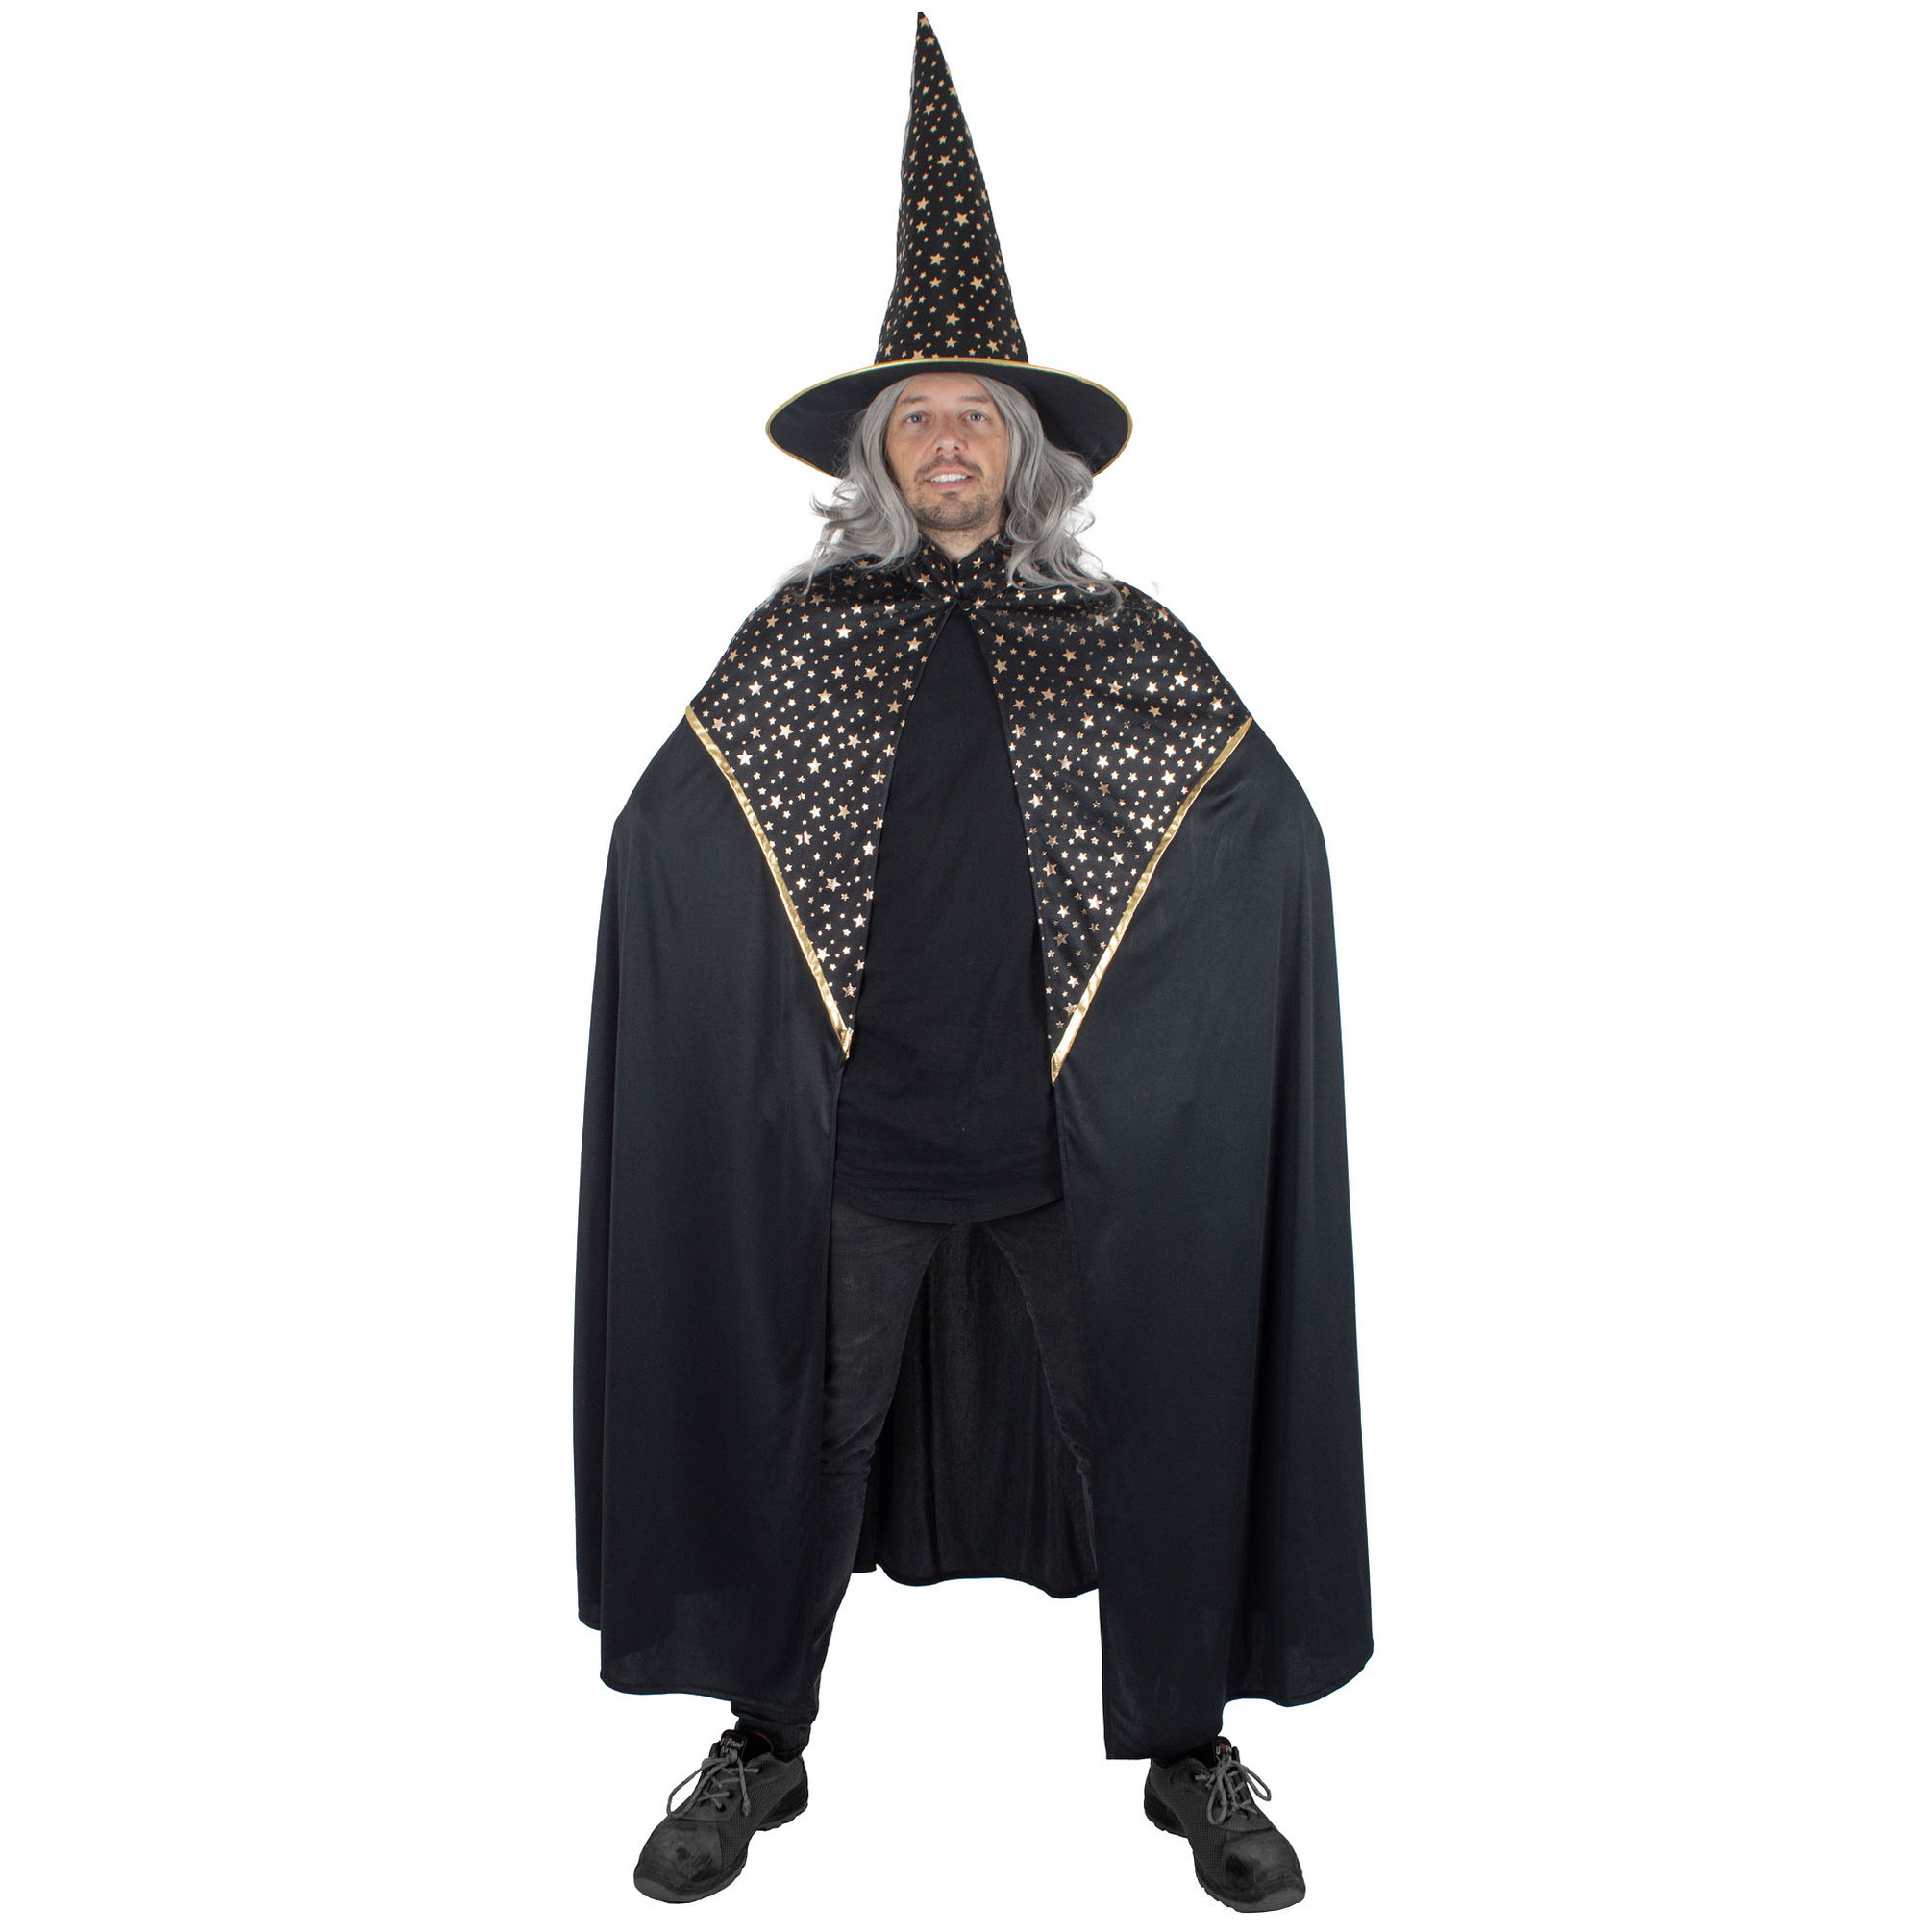 Funny Fashion Tovenaars verkleed cape hoed volwassenen zwart met sterren Carnaval kostuum